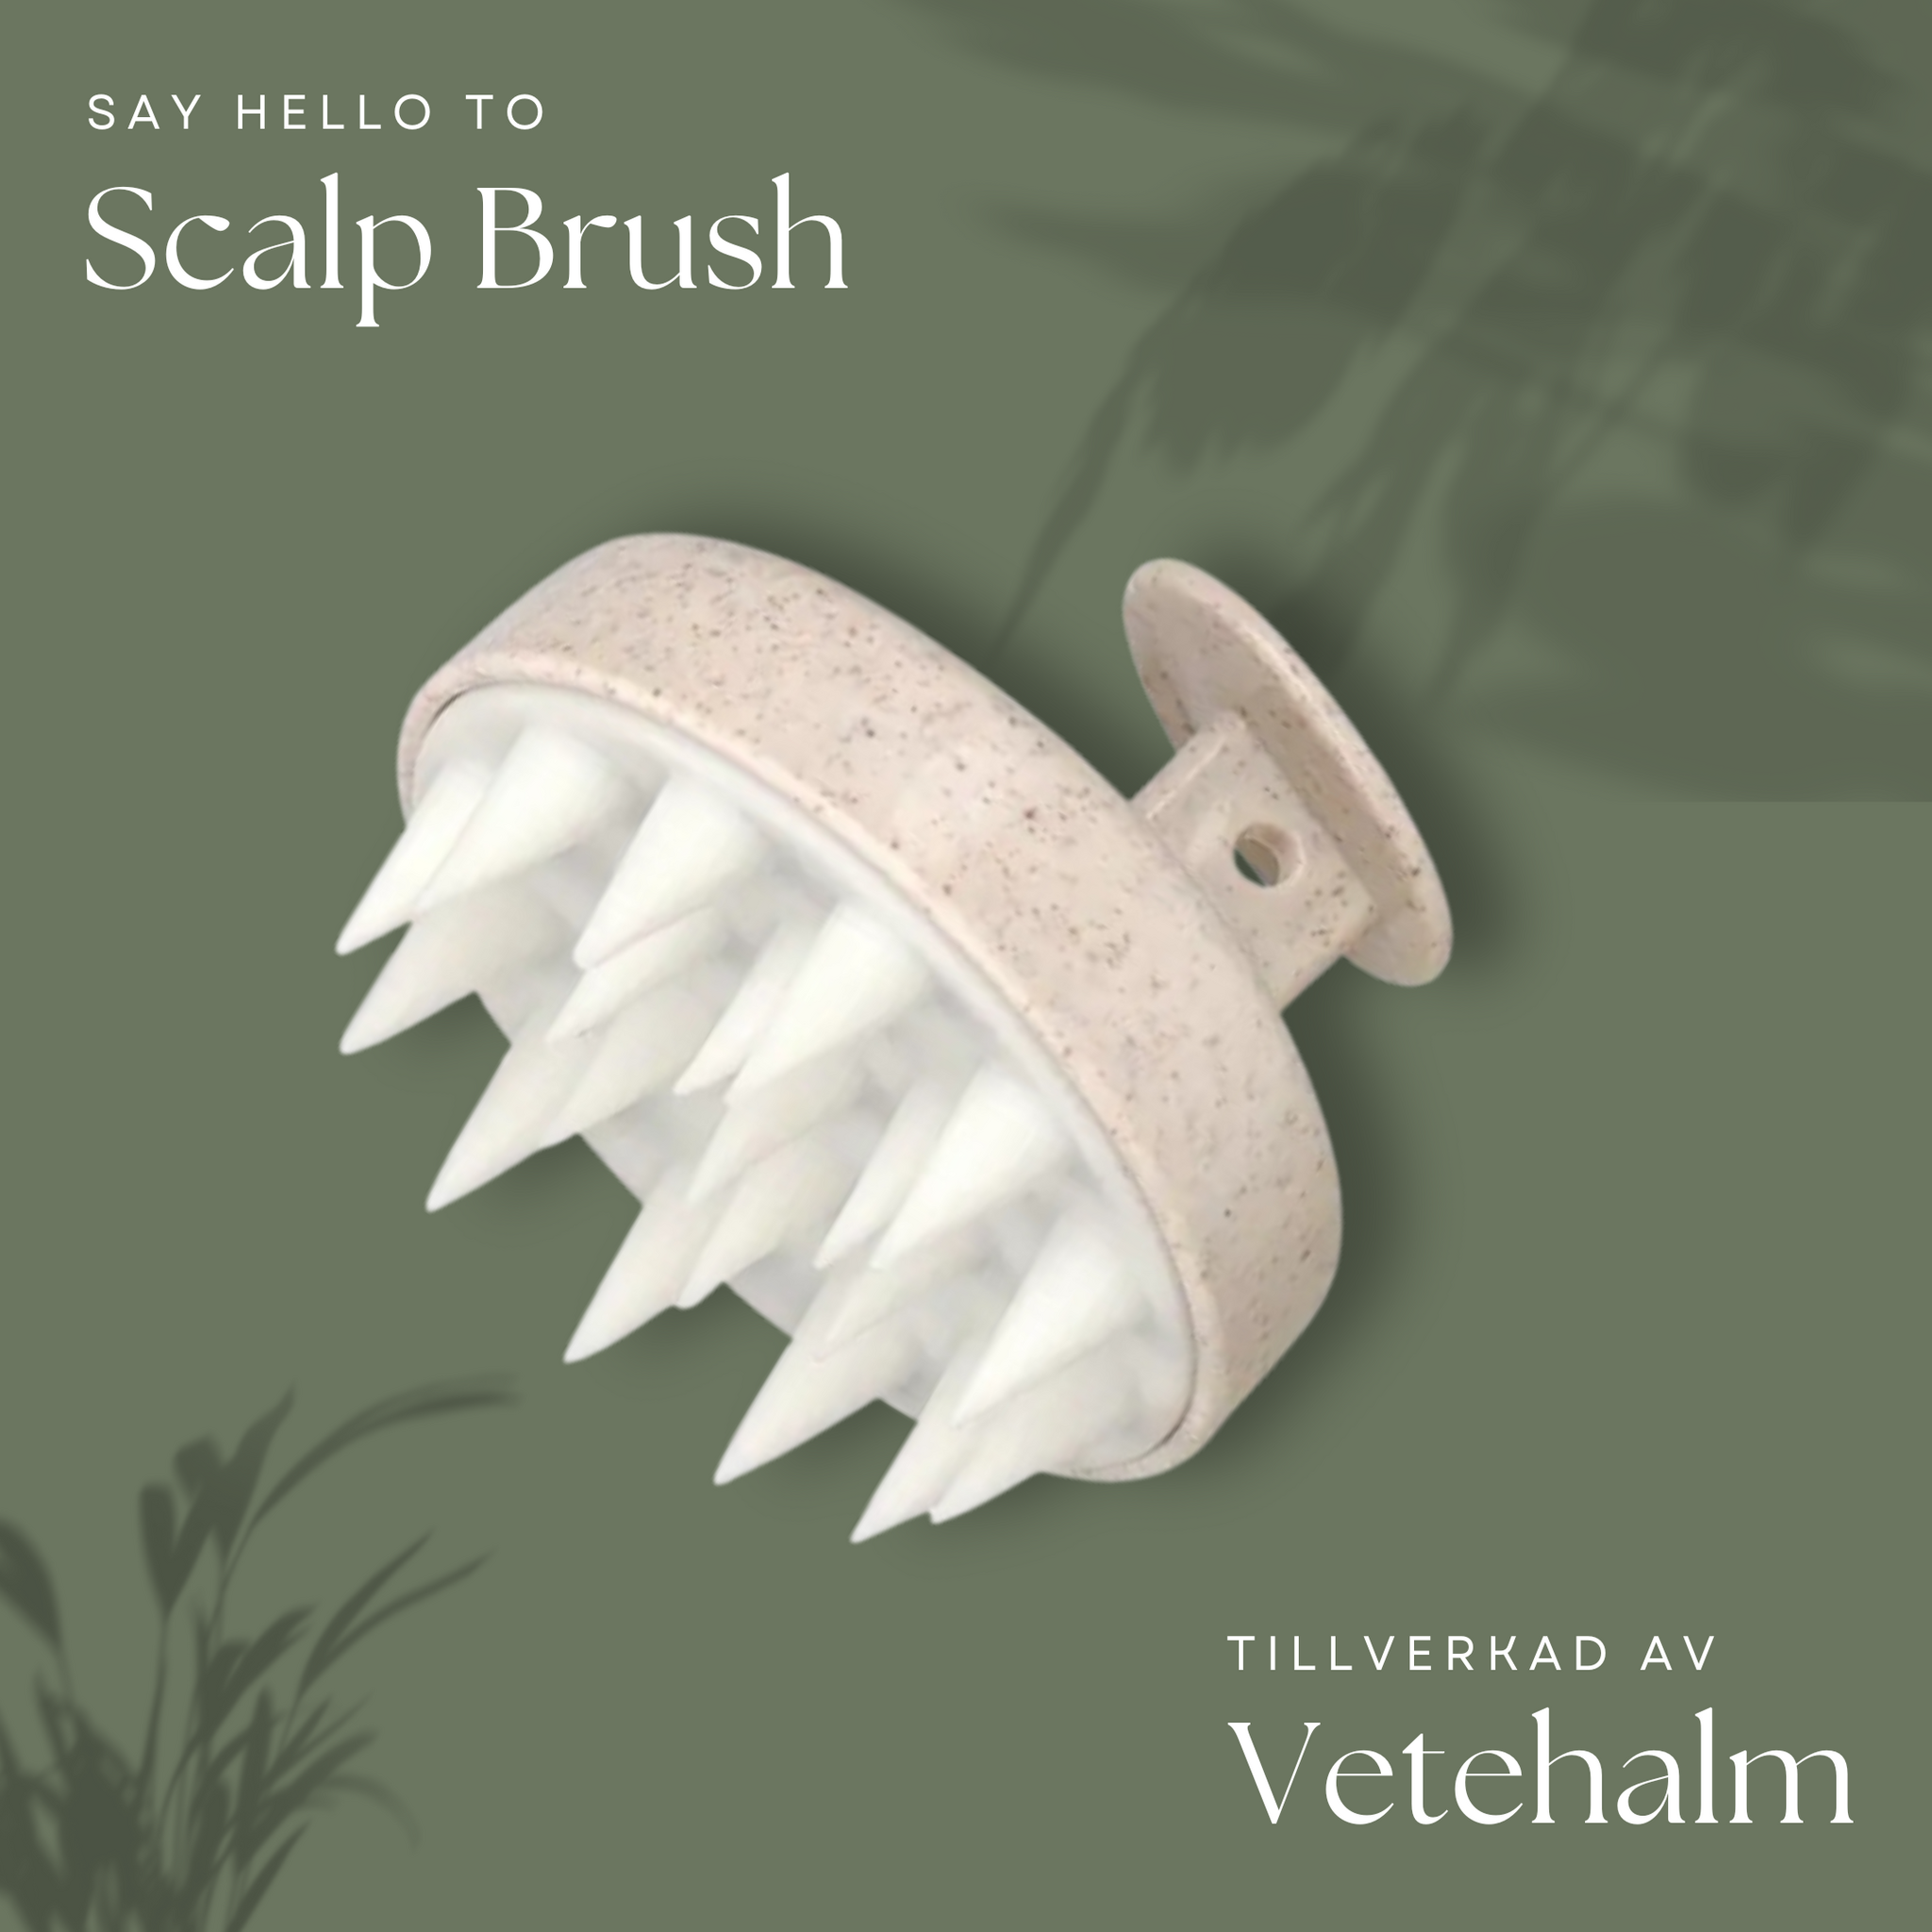 Scalp Brush, främjar hårets naturliga tillväxt och tar bort döda hudceller